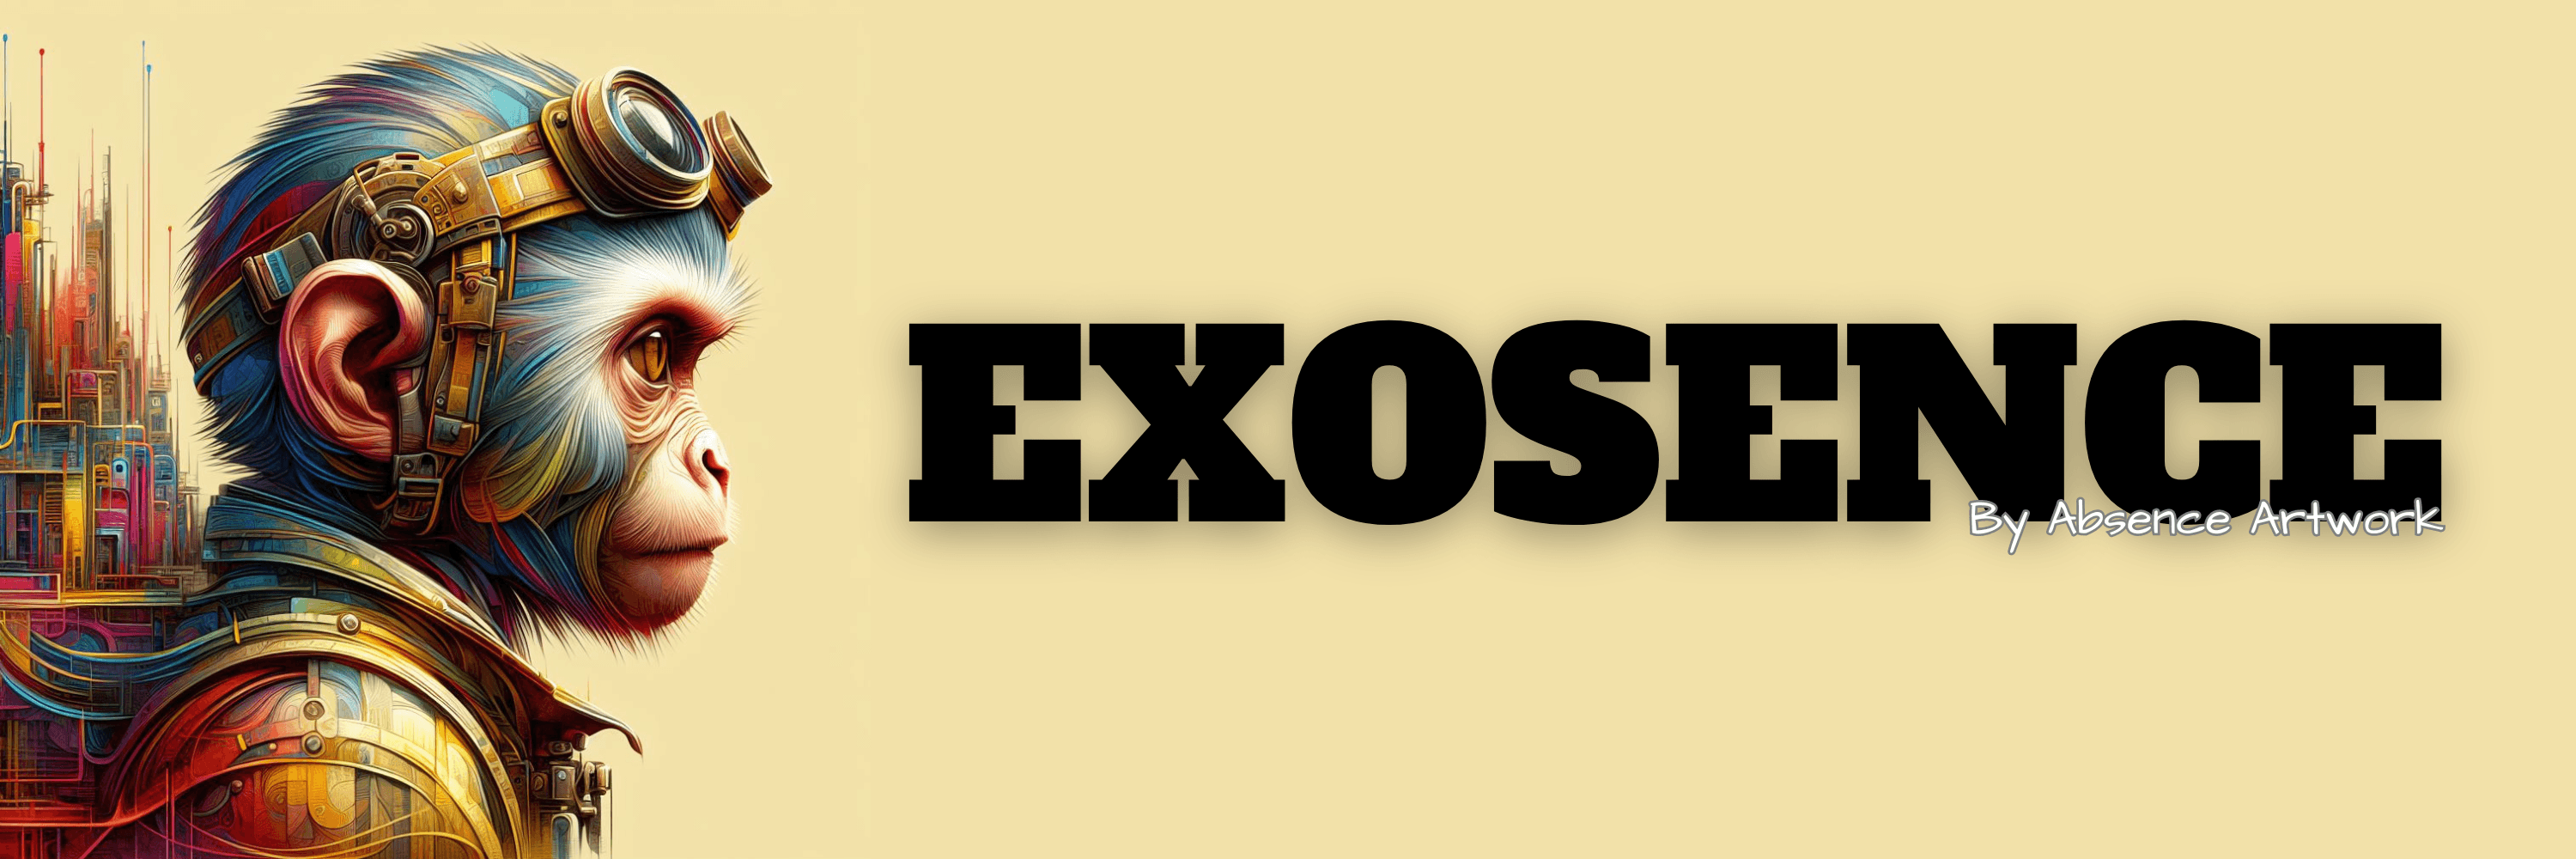 Exosence Banner